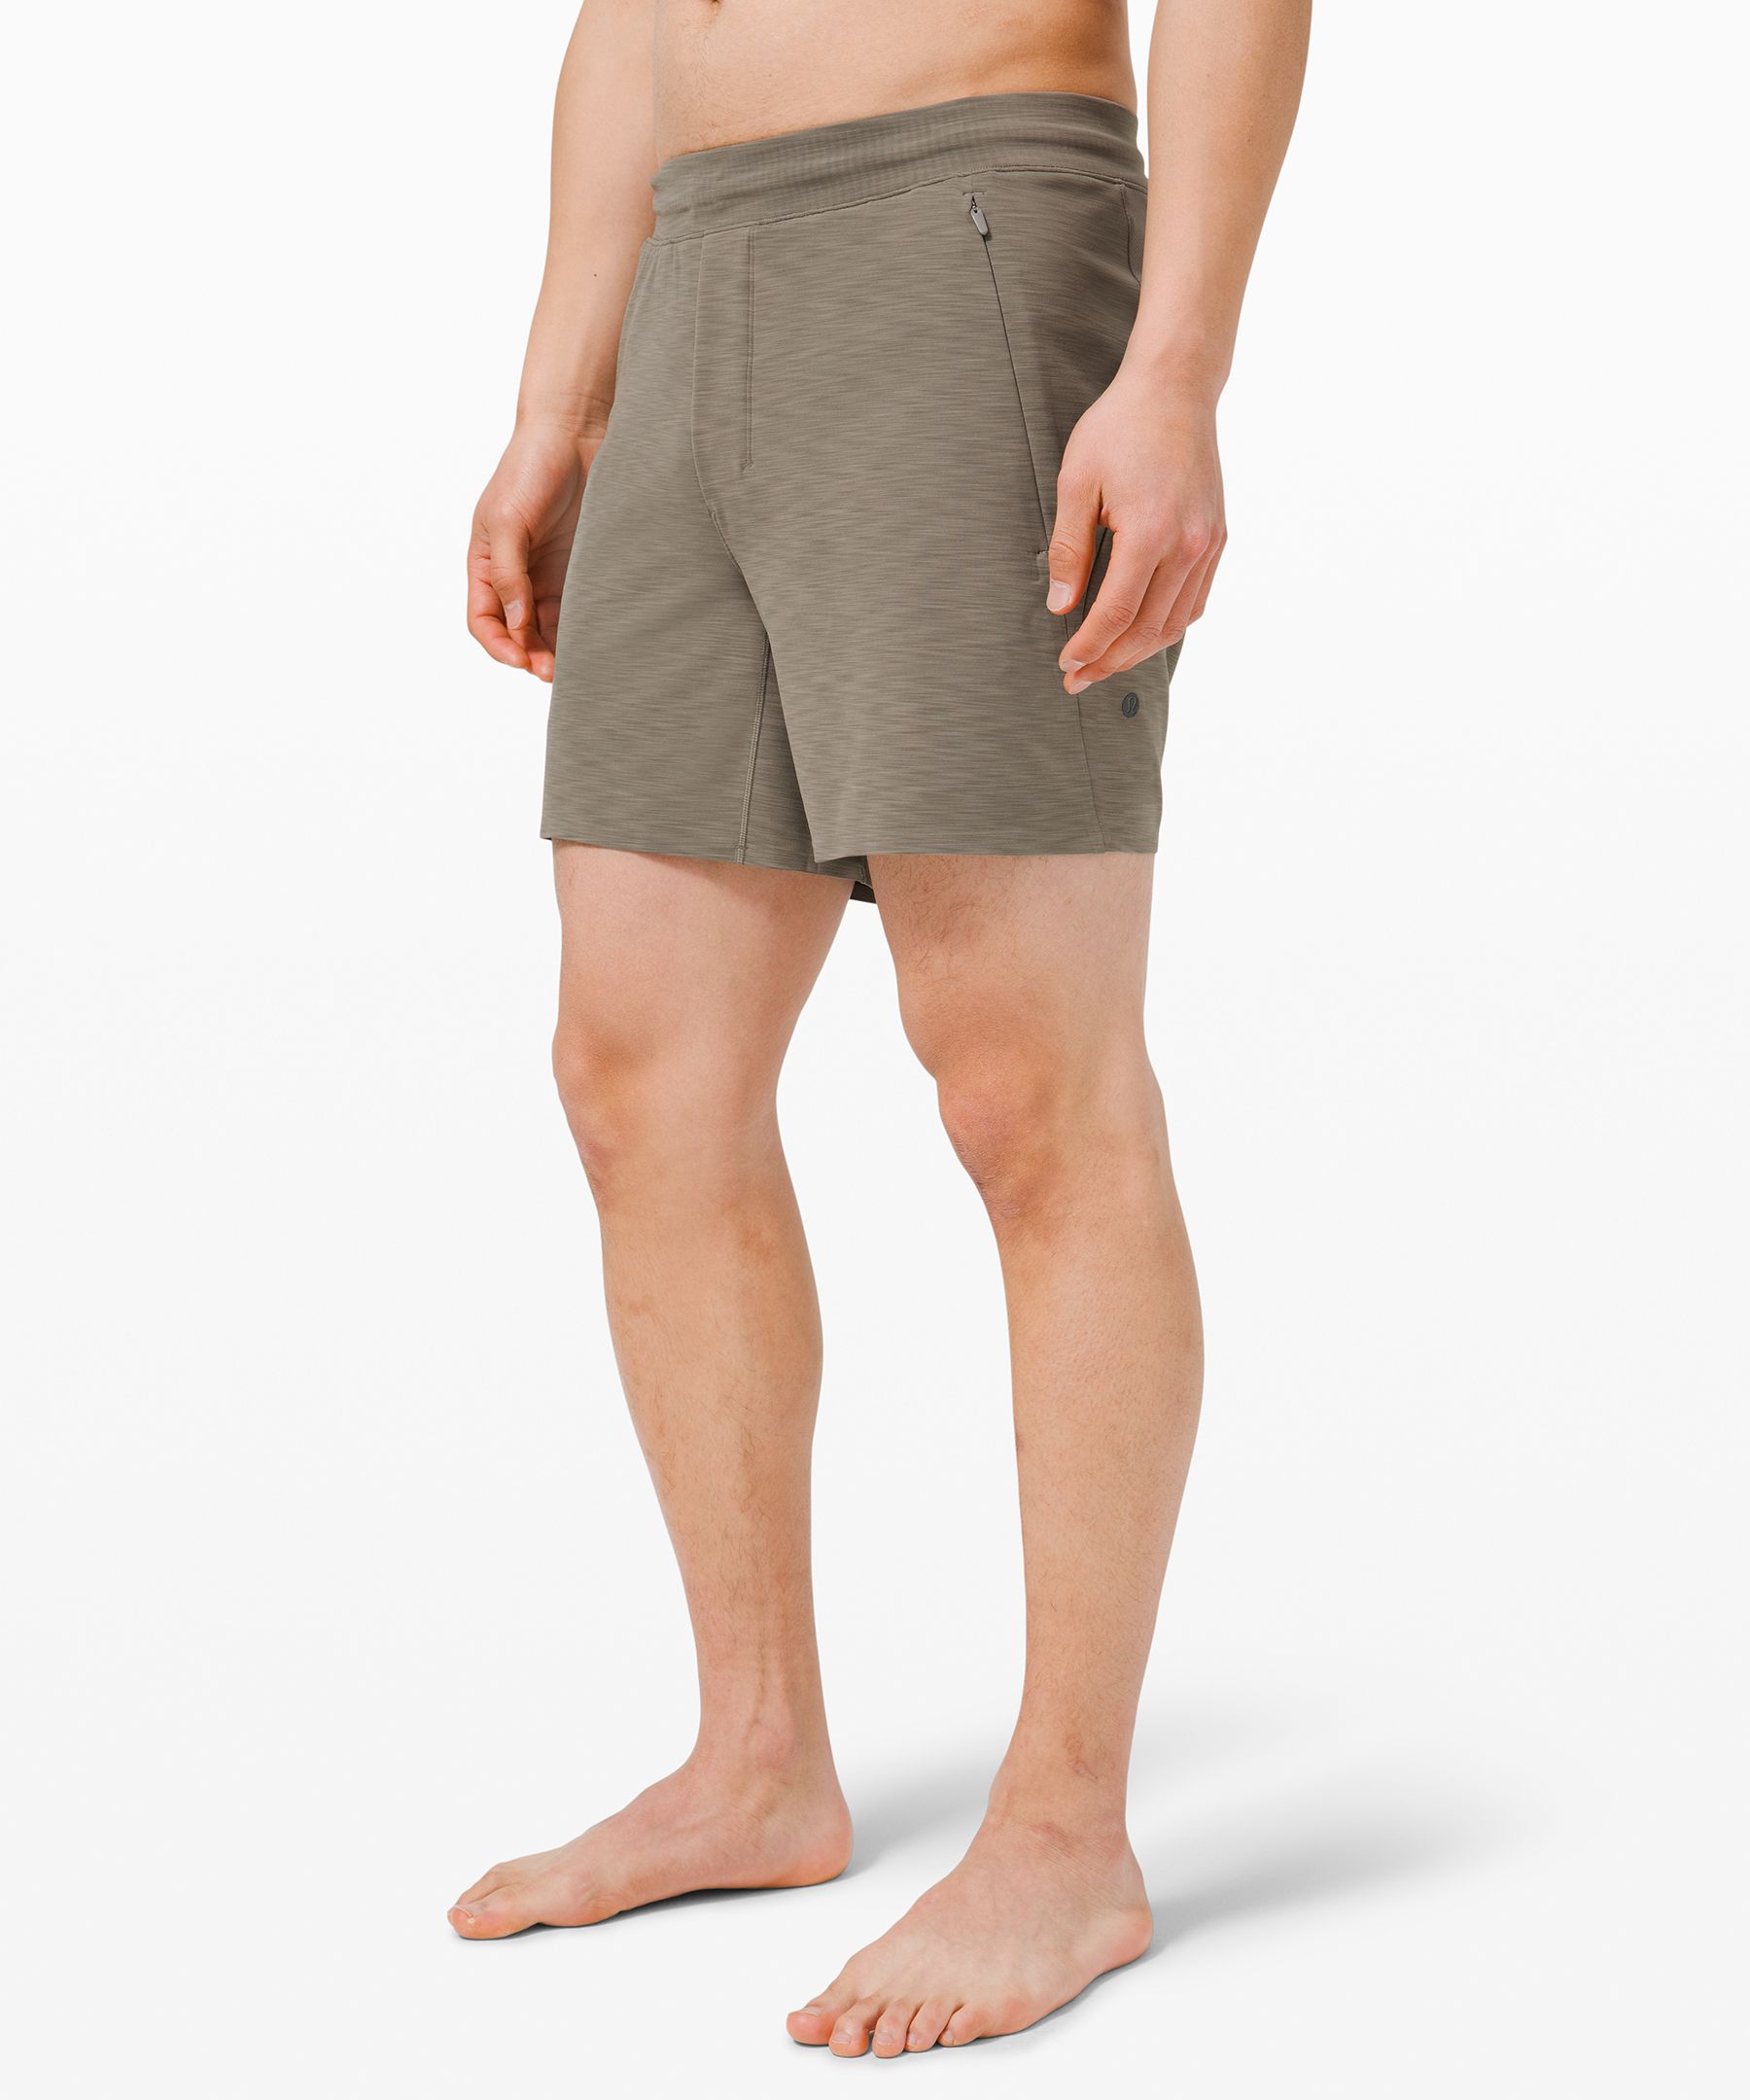 lululemon hot yoga shorts